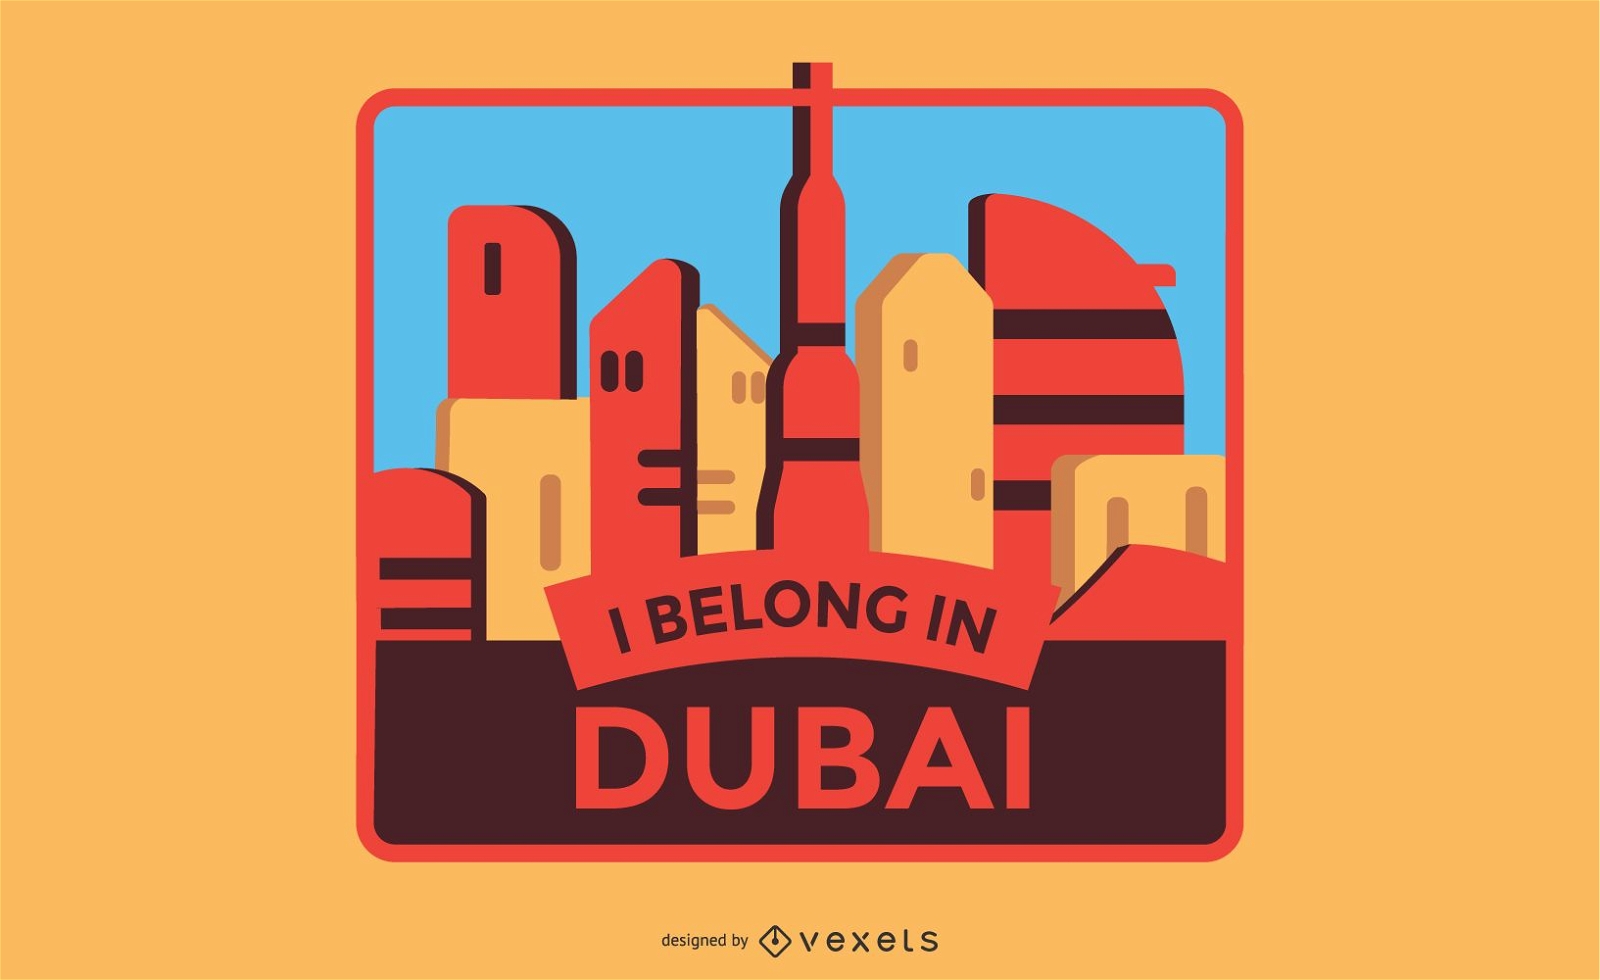 Dise?o de etiquetas de Dubai